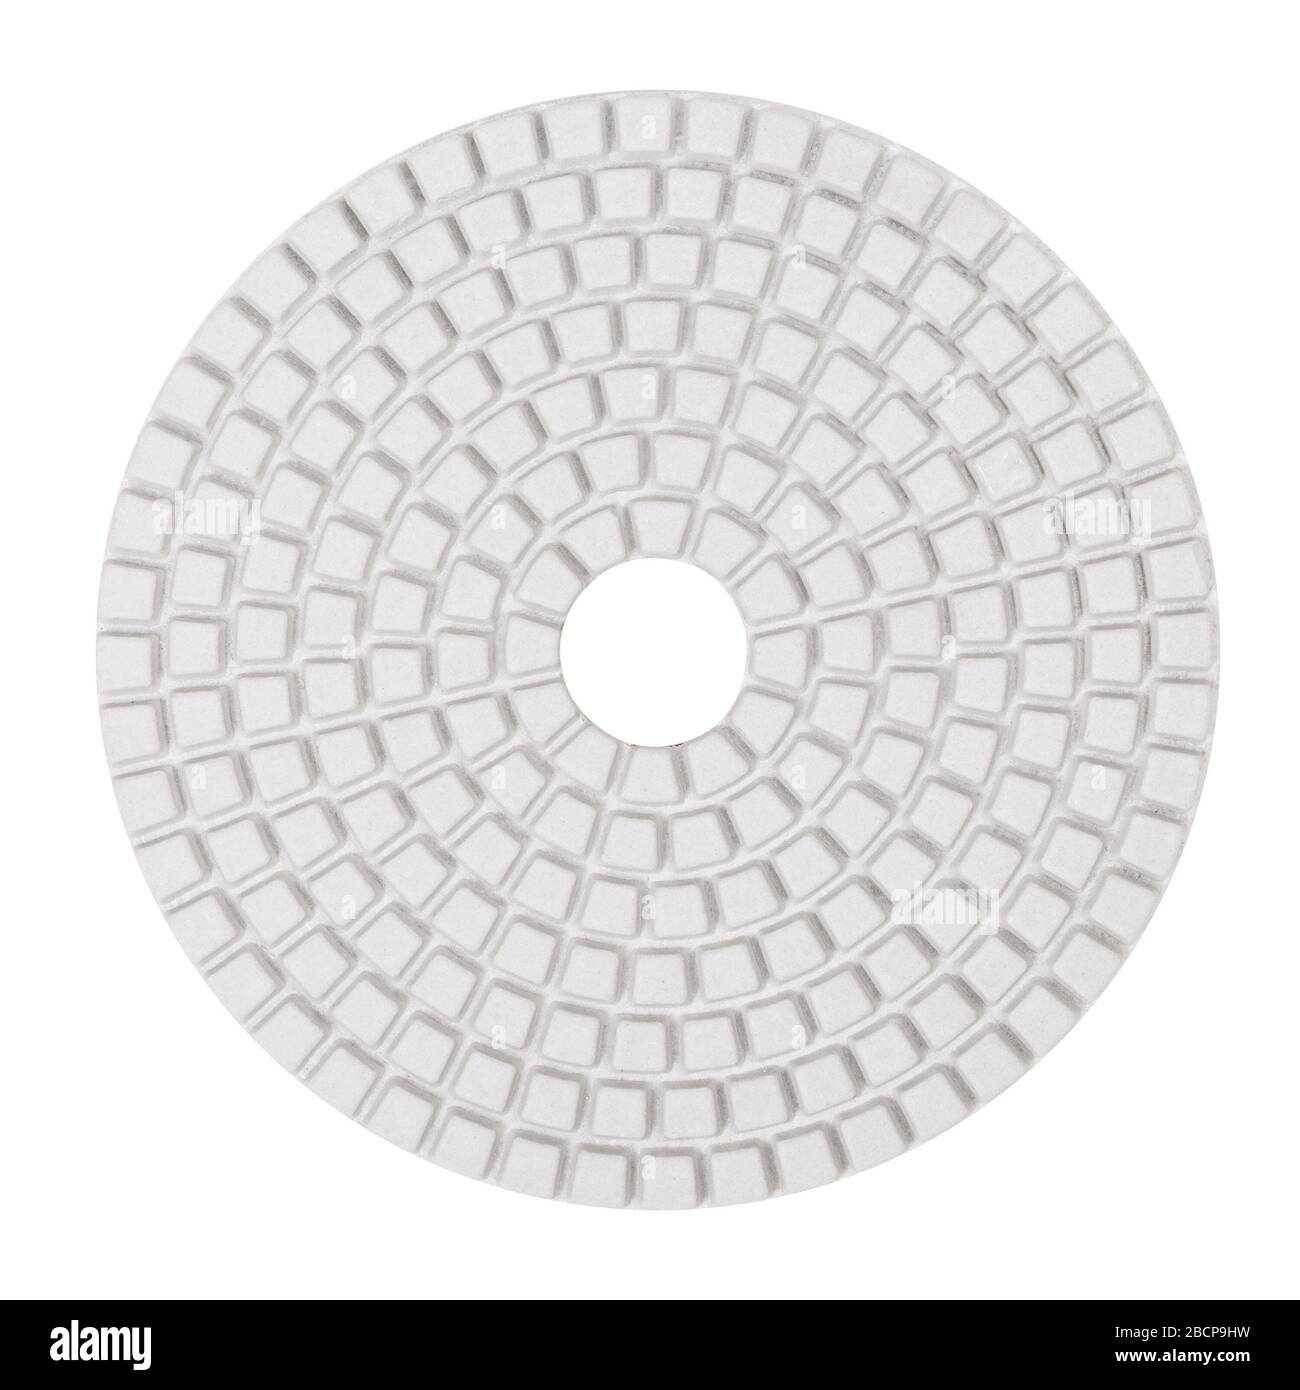 Rautenförmige, flexible Schleifscheibe für Schleifmaschinen, isoliert auf weißem Hintergrund Stockfoto